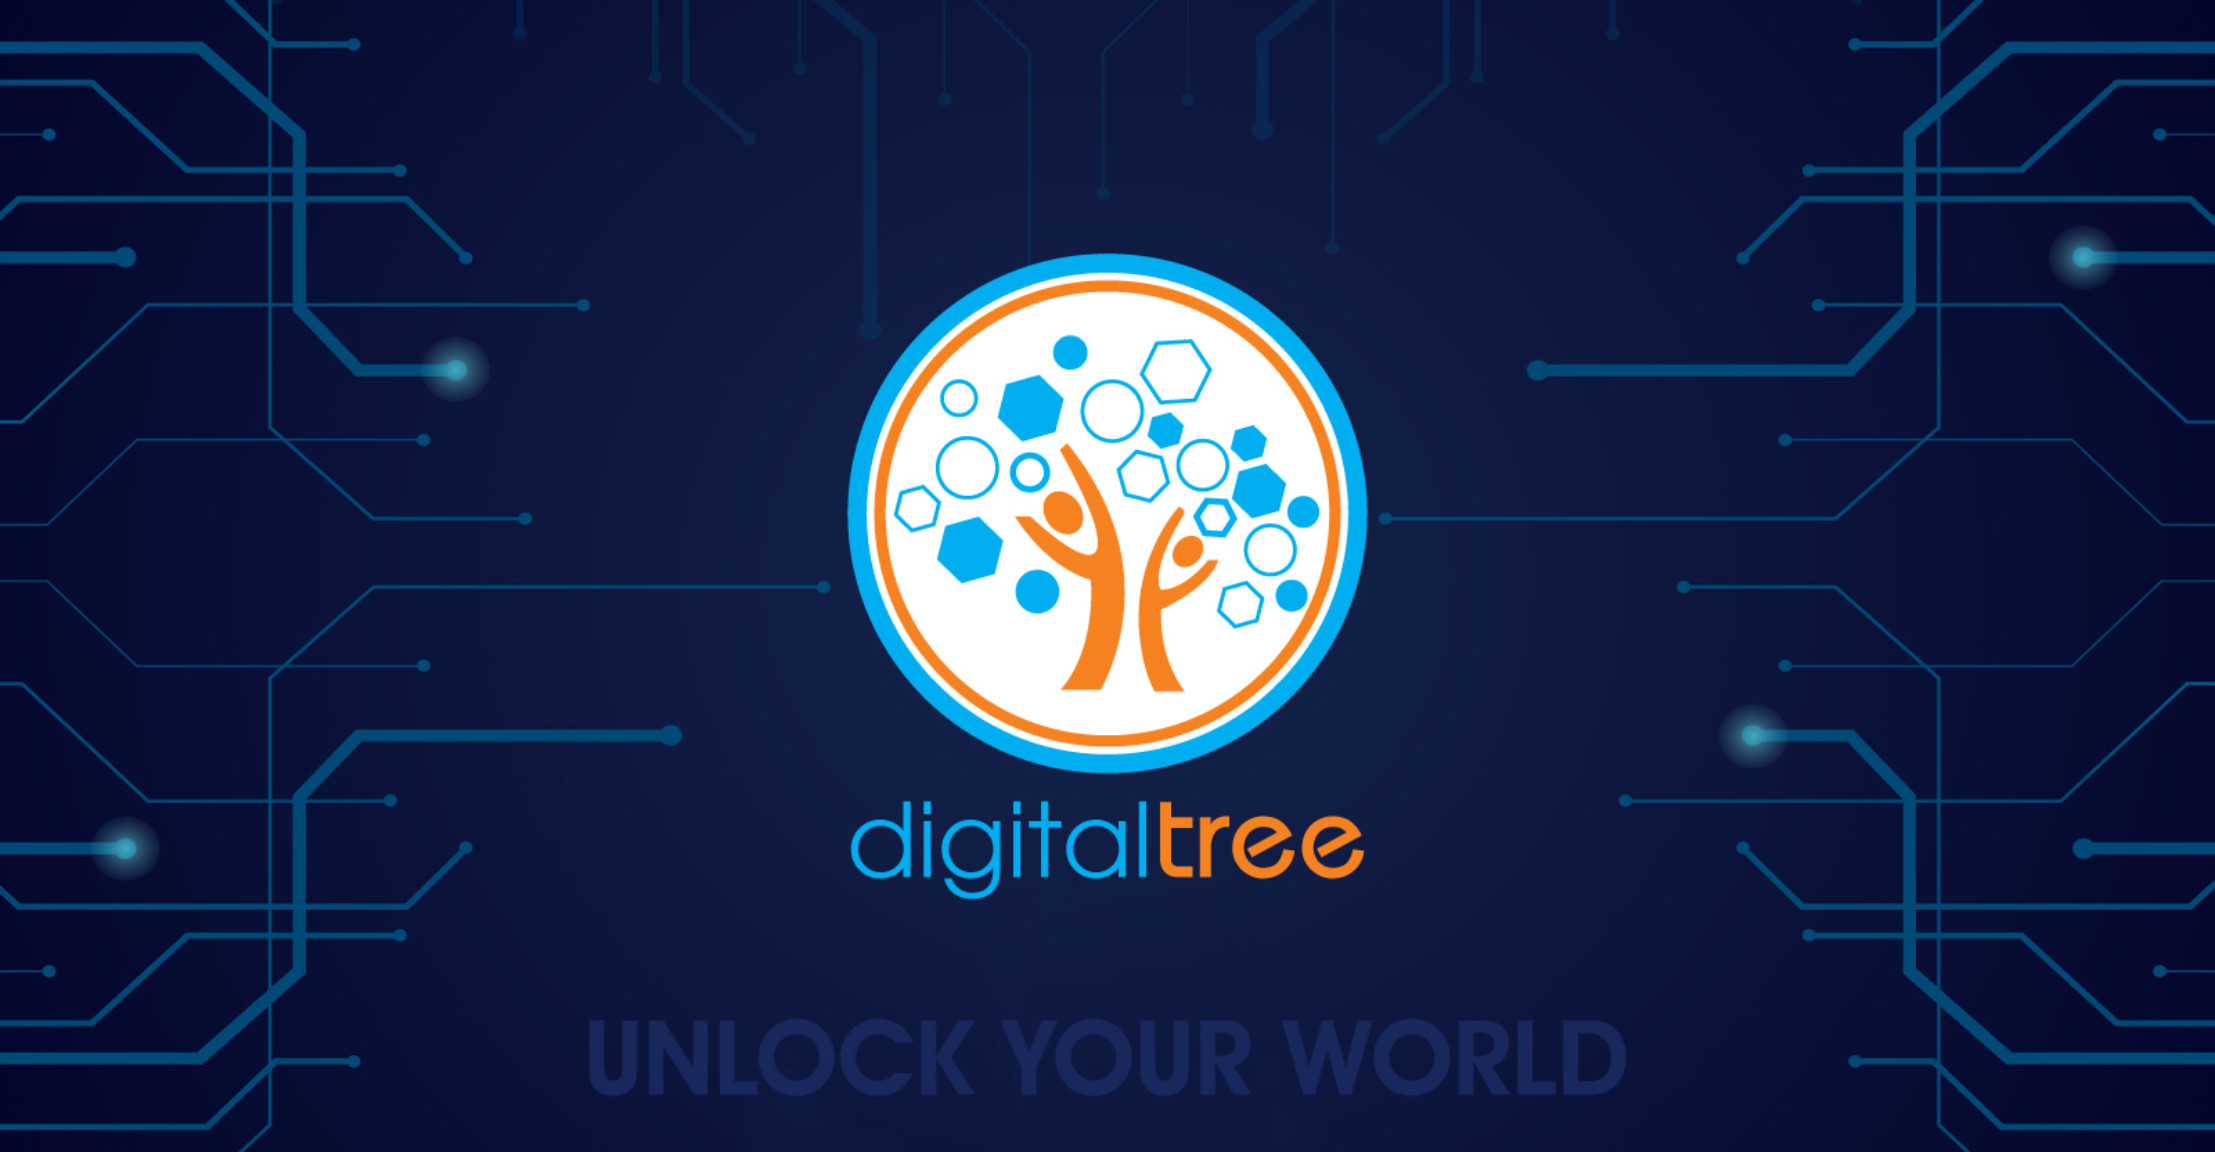 Digital Tree